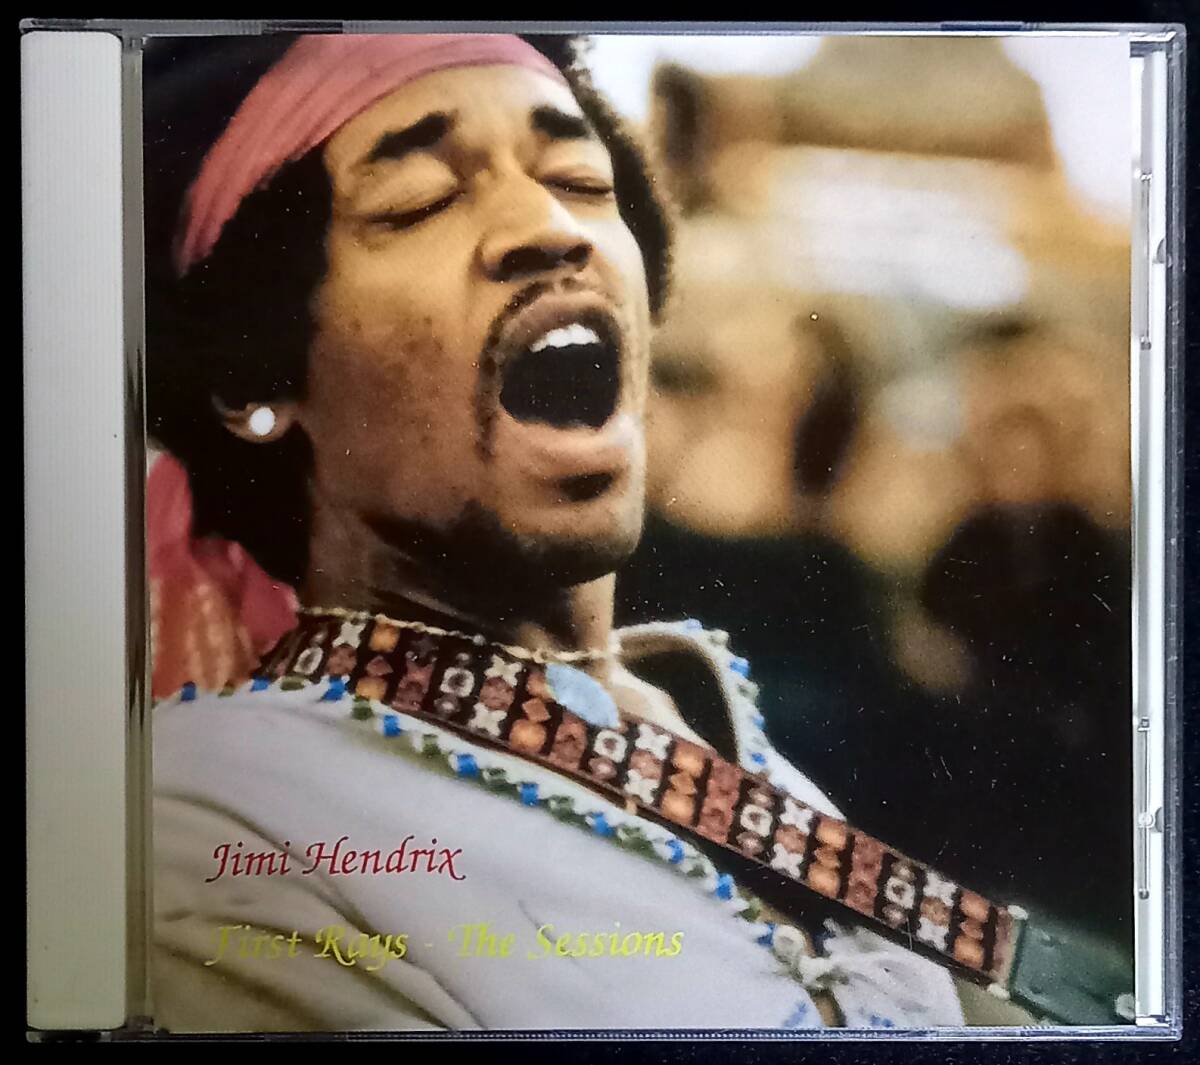 Jimi Hendrix First Rays The Session〔1CD〕ジミヘンドリックス クライオブラブ バンドオブジプシーズ スティーヴィーレイヴォーン 廃盤_画像1